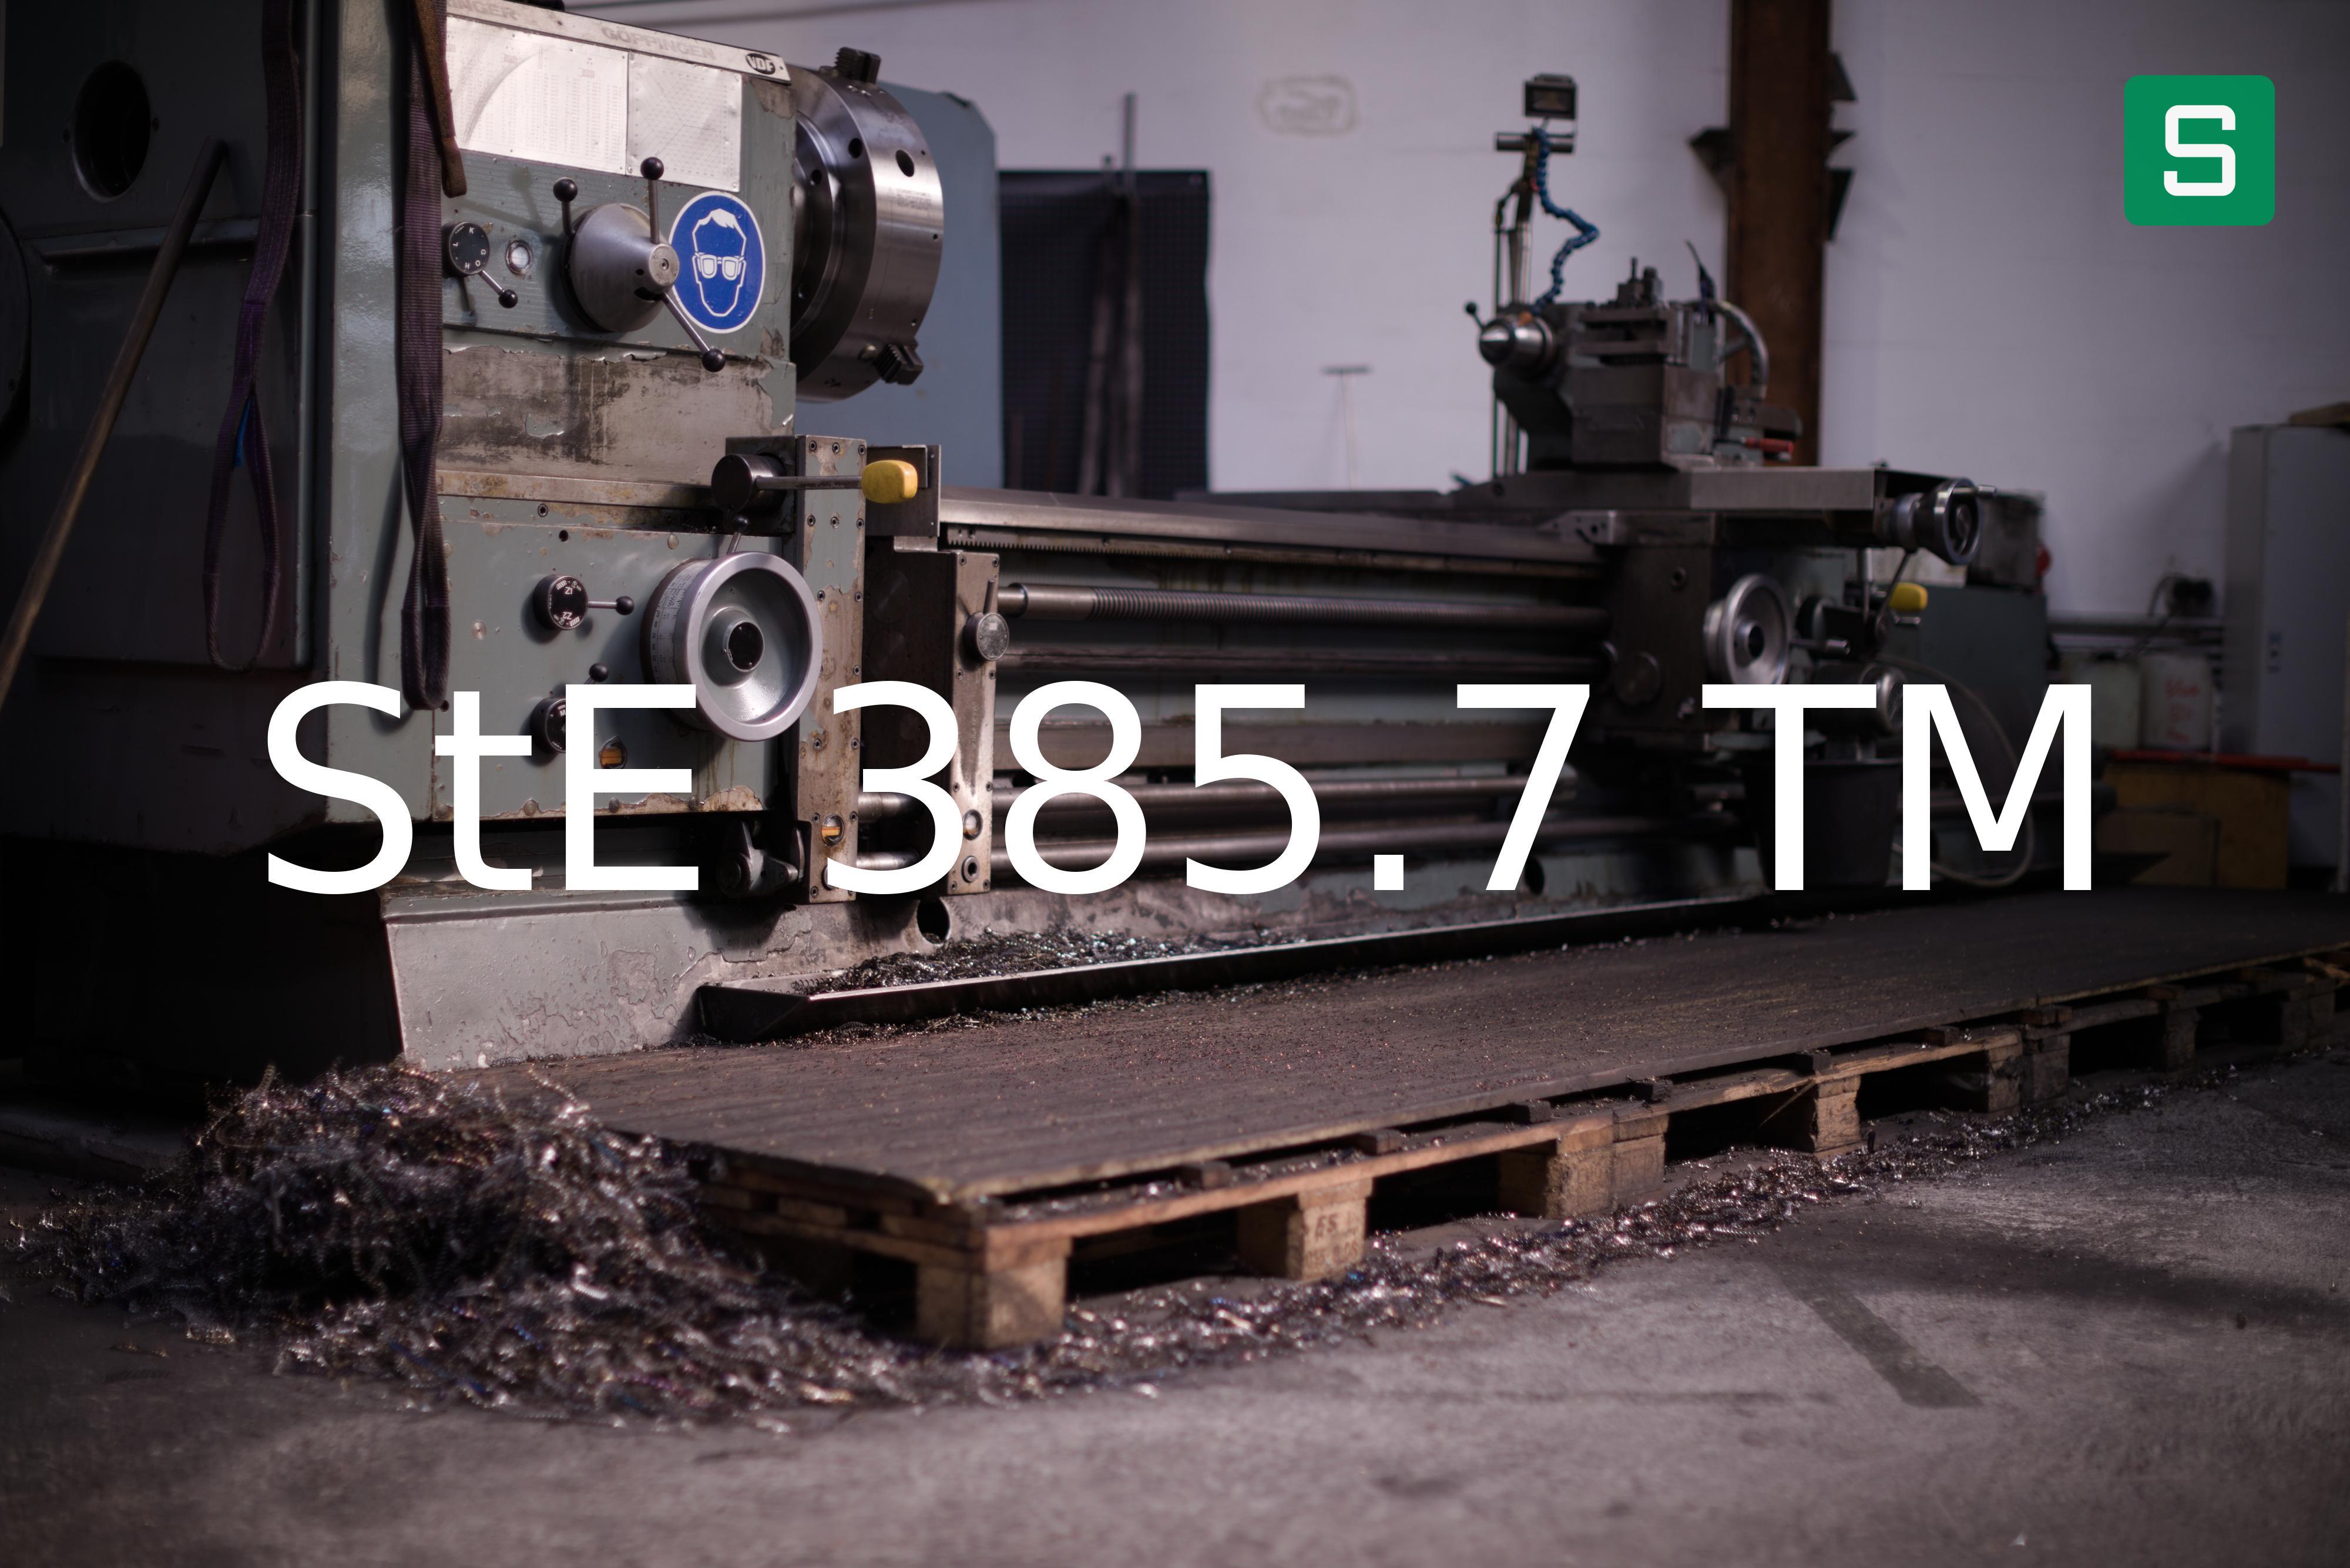 Steel Material: StE 385.7 TM